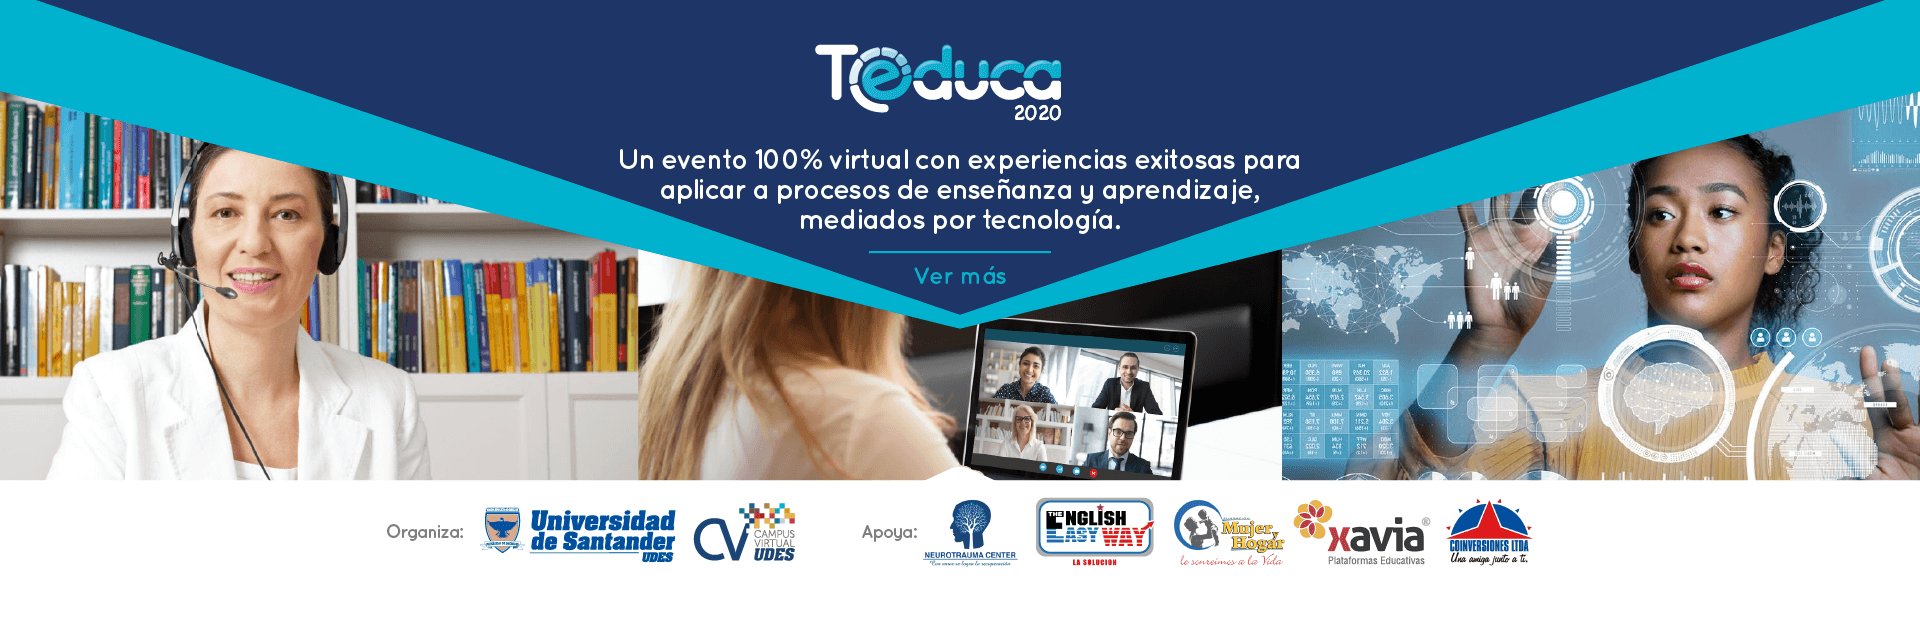 Experiencias exitosas para aplicar a procesos de enseñanza aprendizaje mediados por tecnología, en TEDUCA 2020.